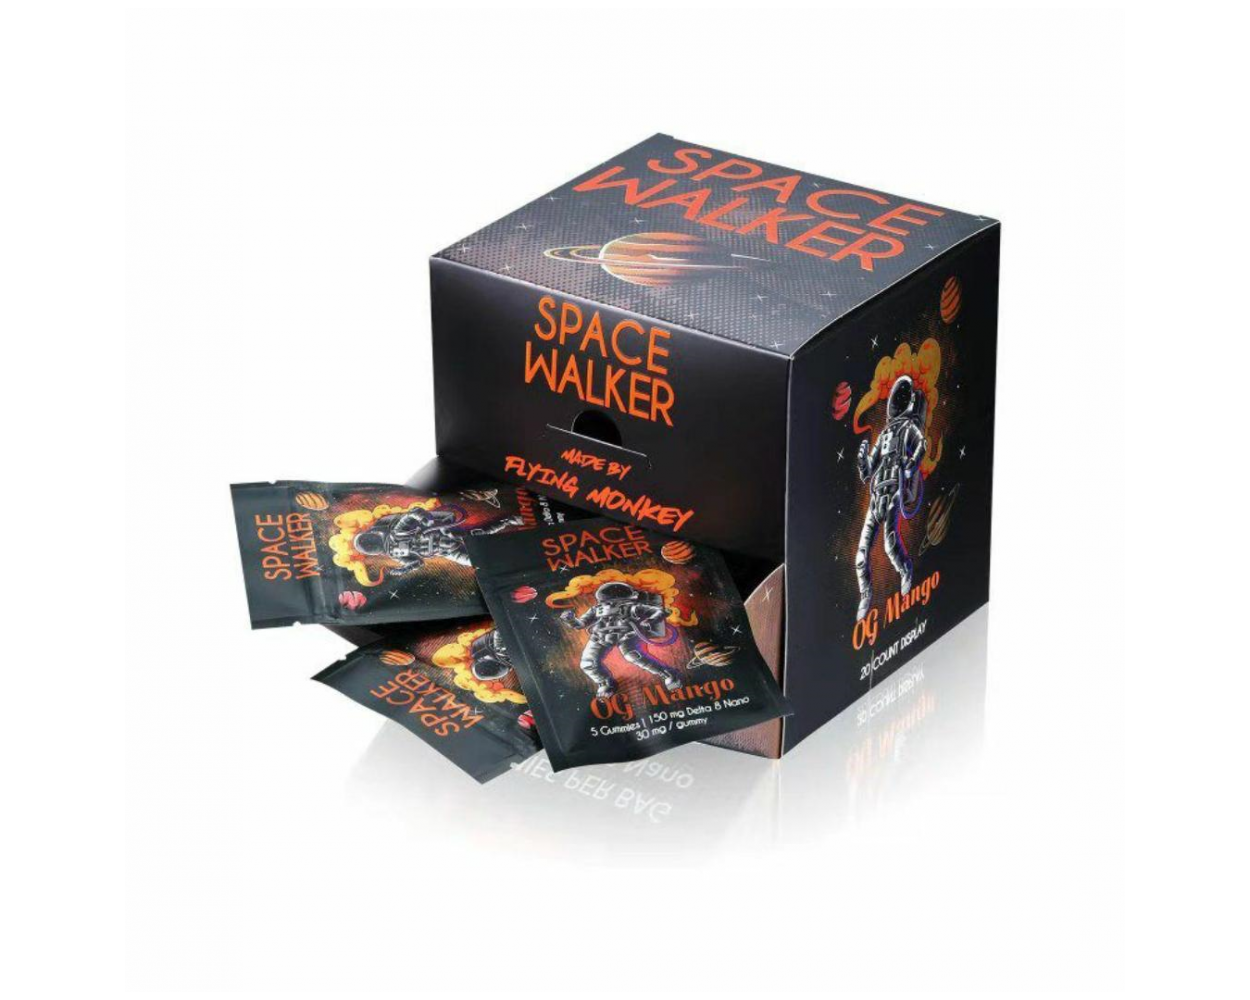 Flying Monkey Space Walker Delta 8 Gummies 20 Pack Display